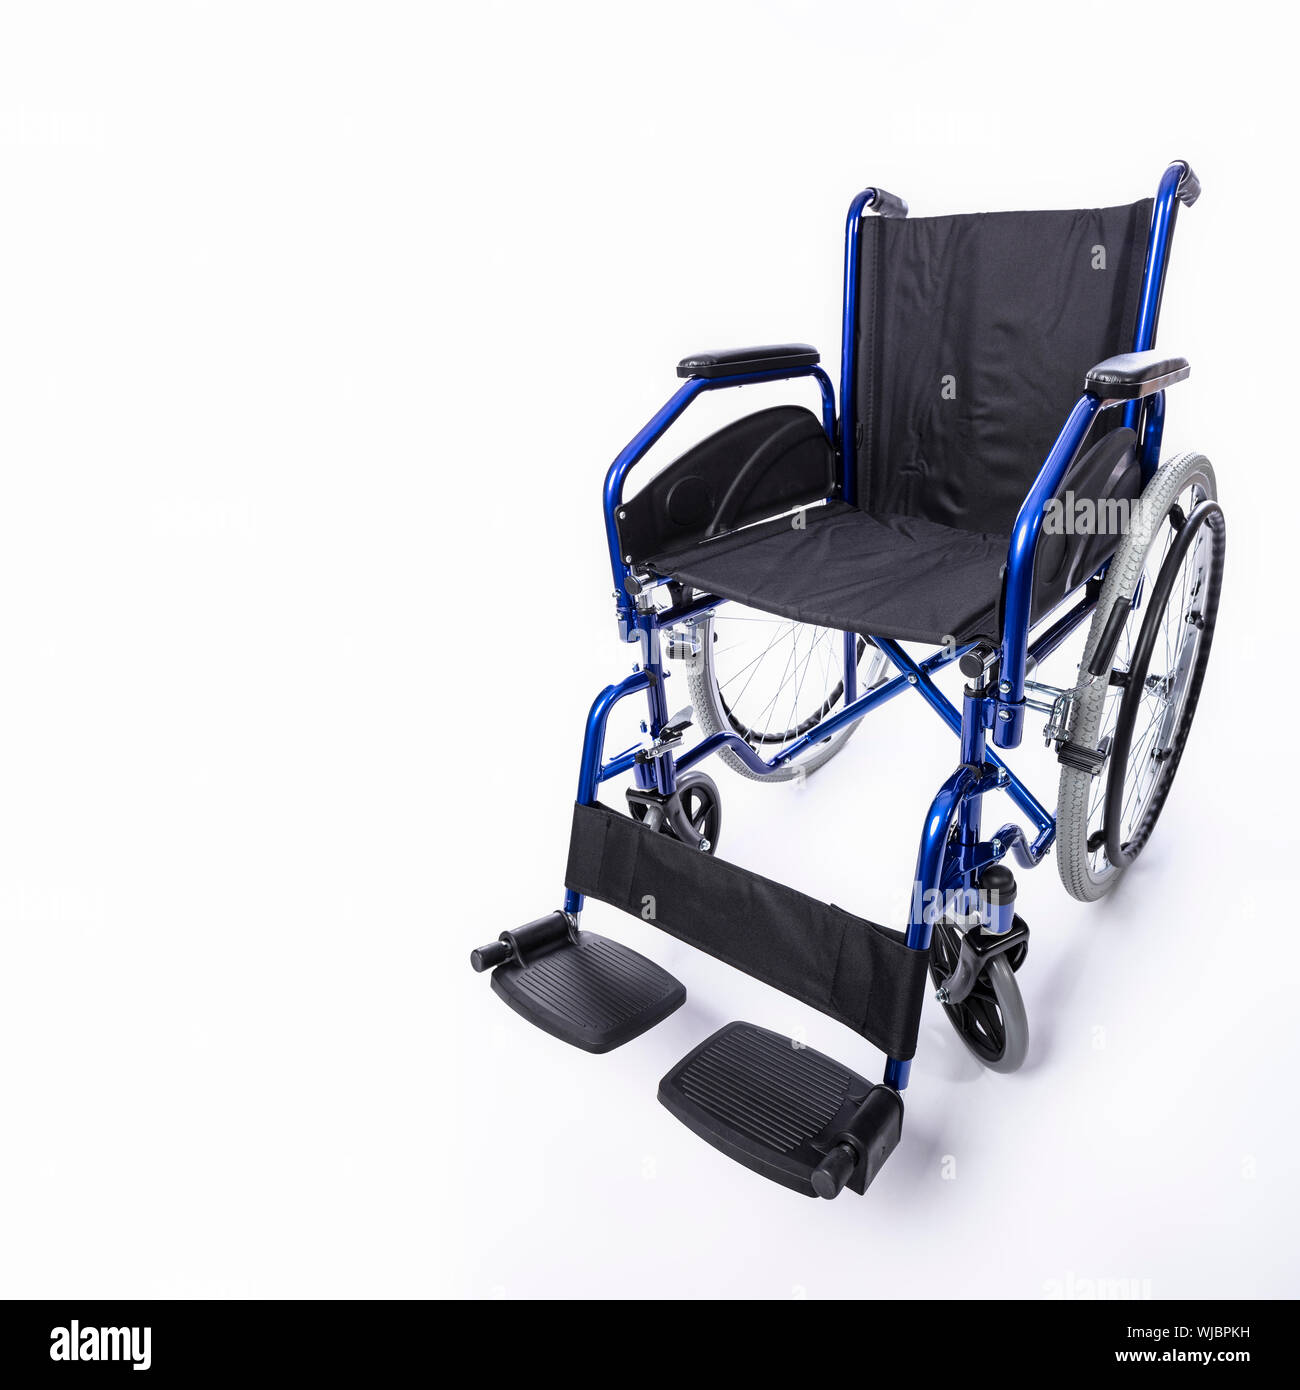 Pour les personnes handicapées en fauteuil roulant sur un fond blanc, l'image nobodyin. Banque D'Images